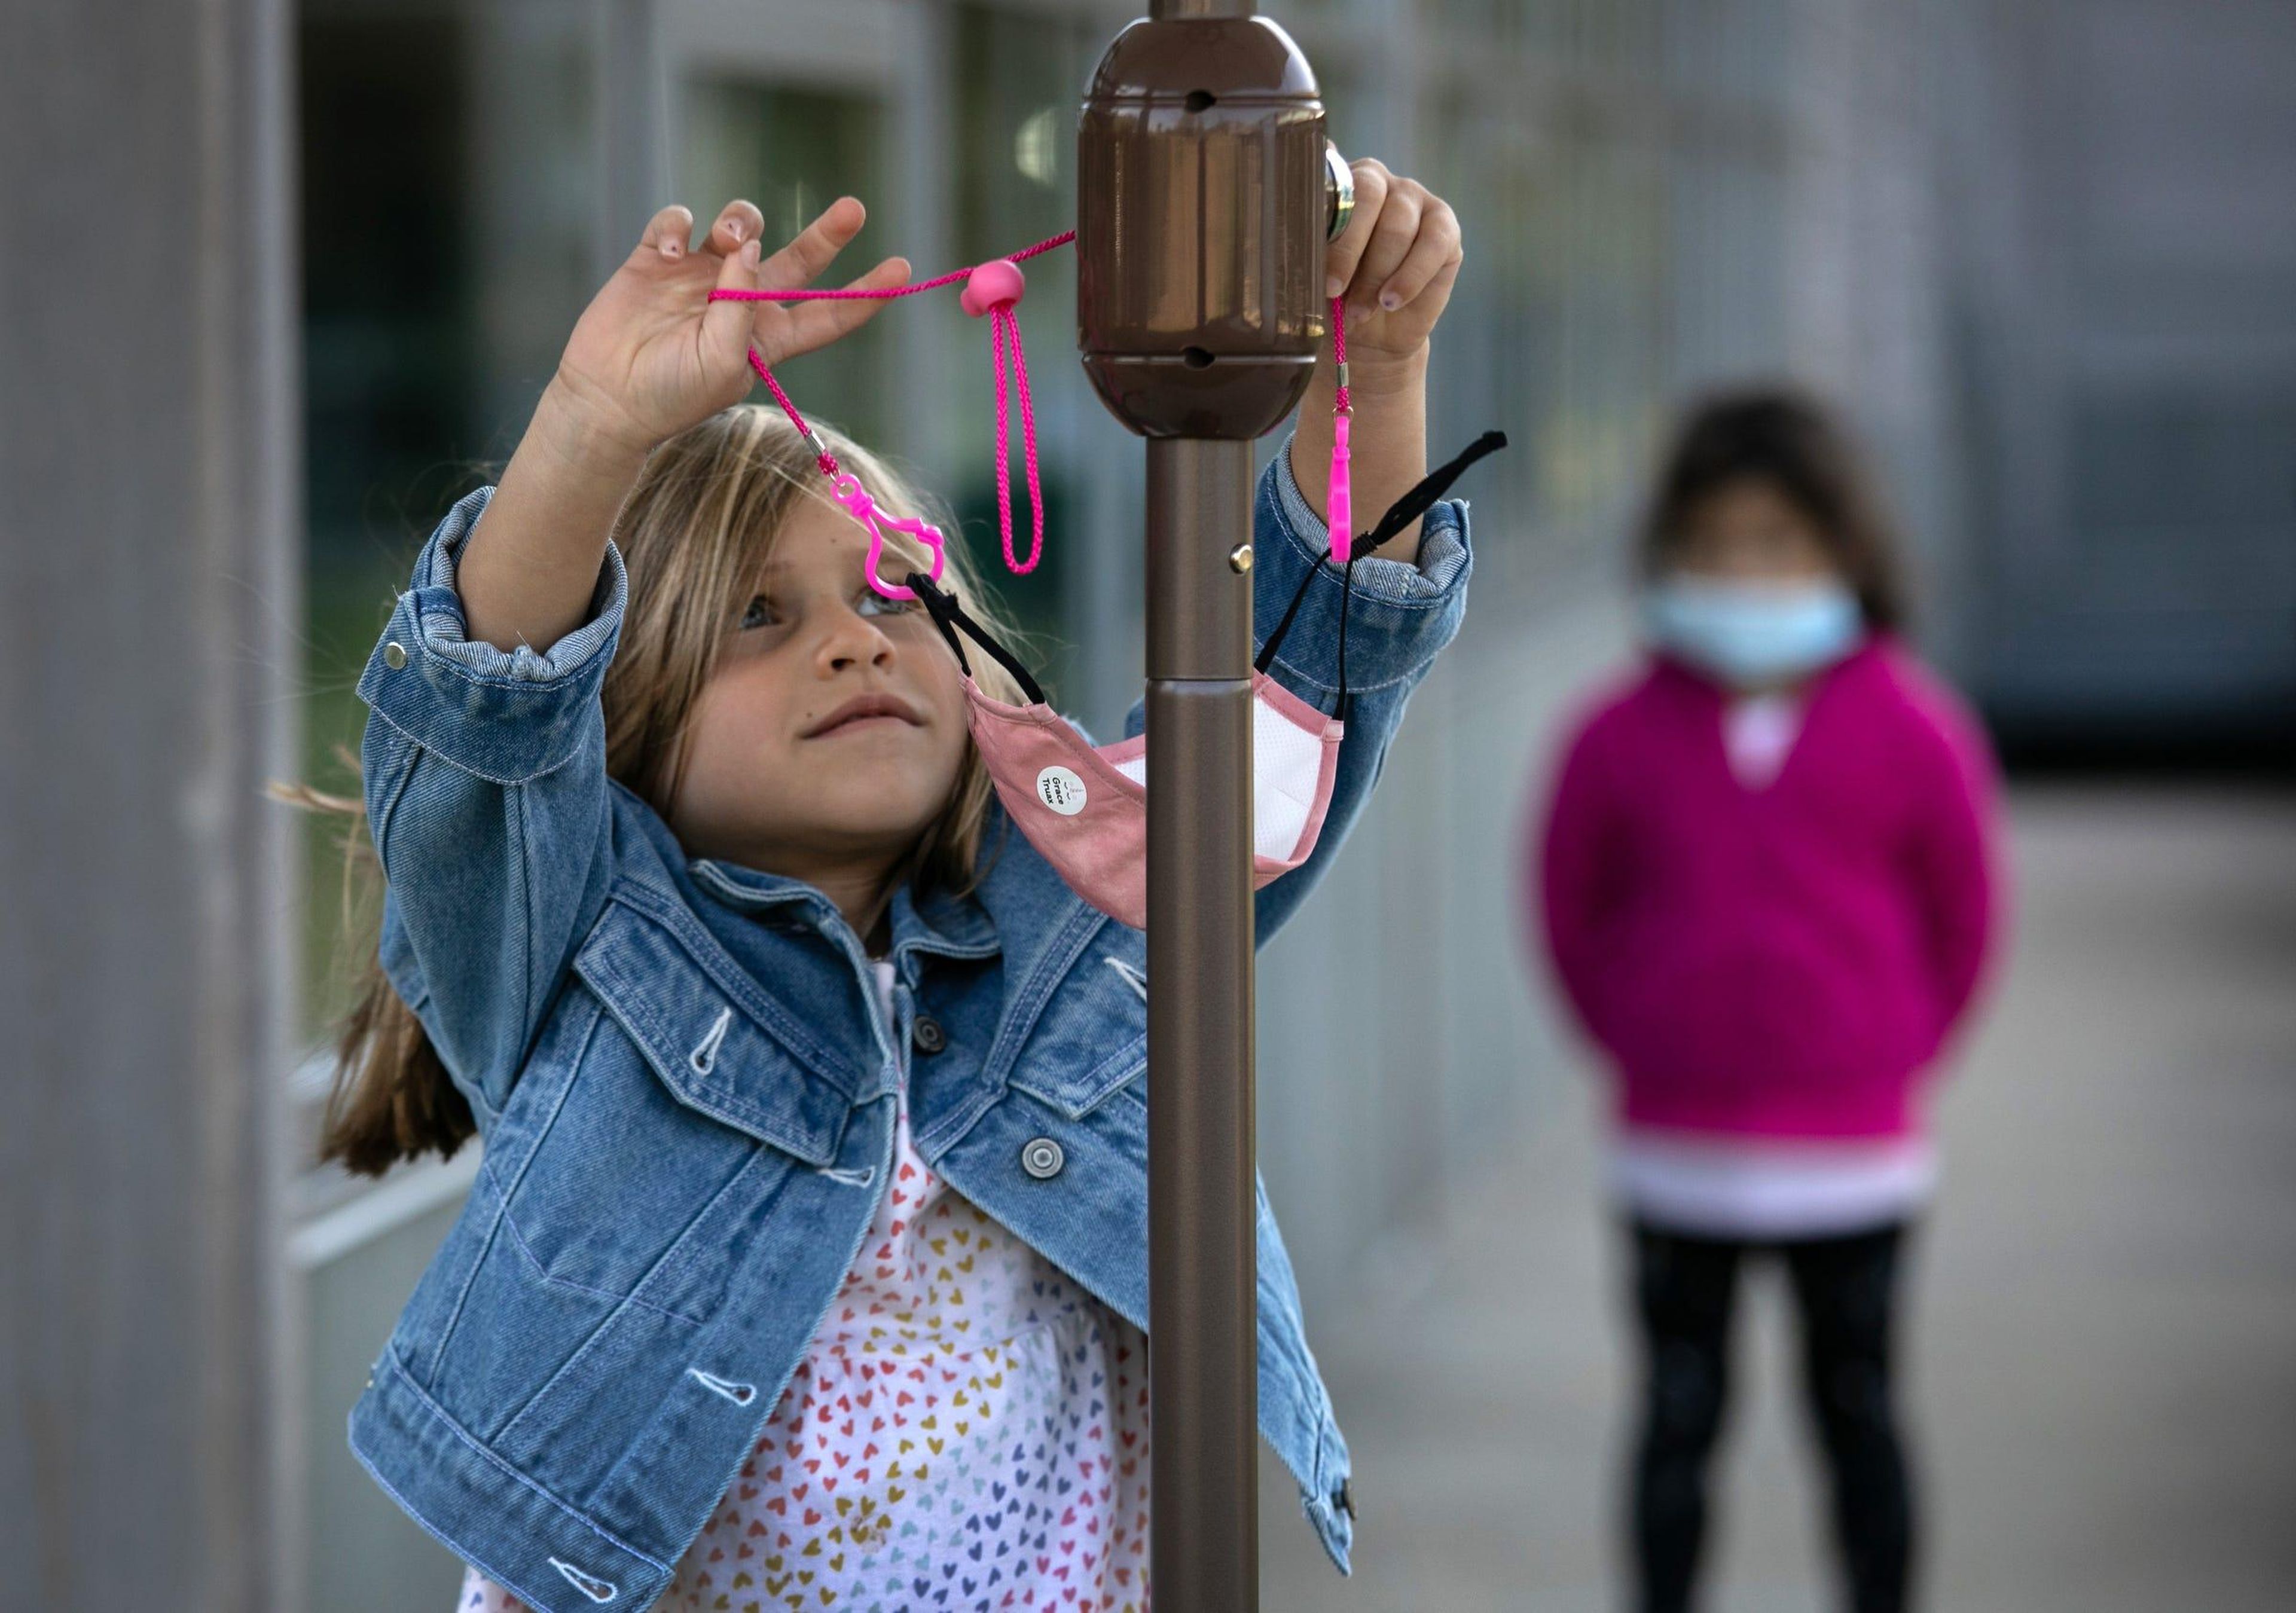 Una niña de 5 años, Grace Truax, se quita la máscara antes de posar para una foto durante el "día de la foto" en el Rogers International School, el 23 de septiembre de 2020 en Stamford, Connecticut, EEUU.